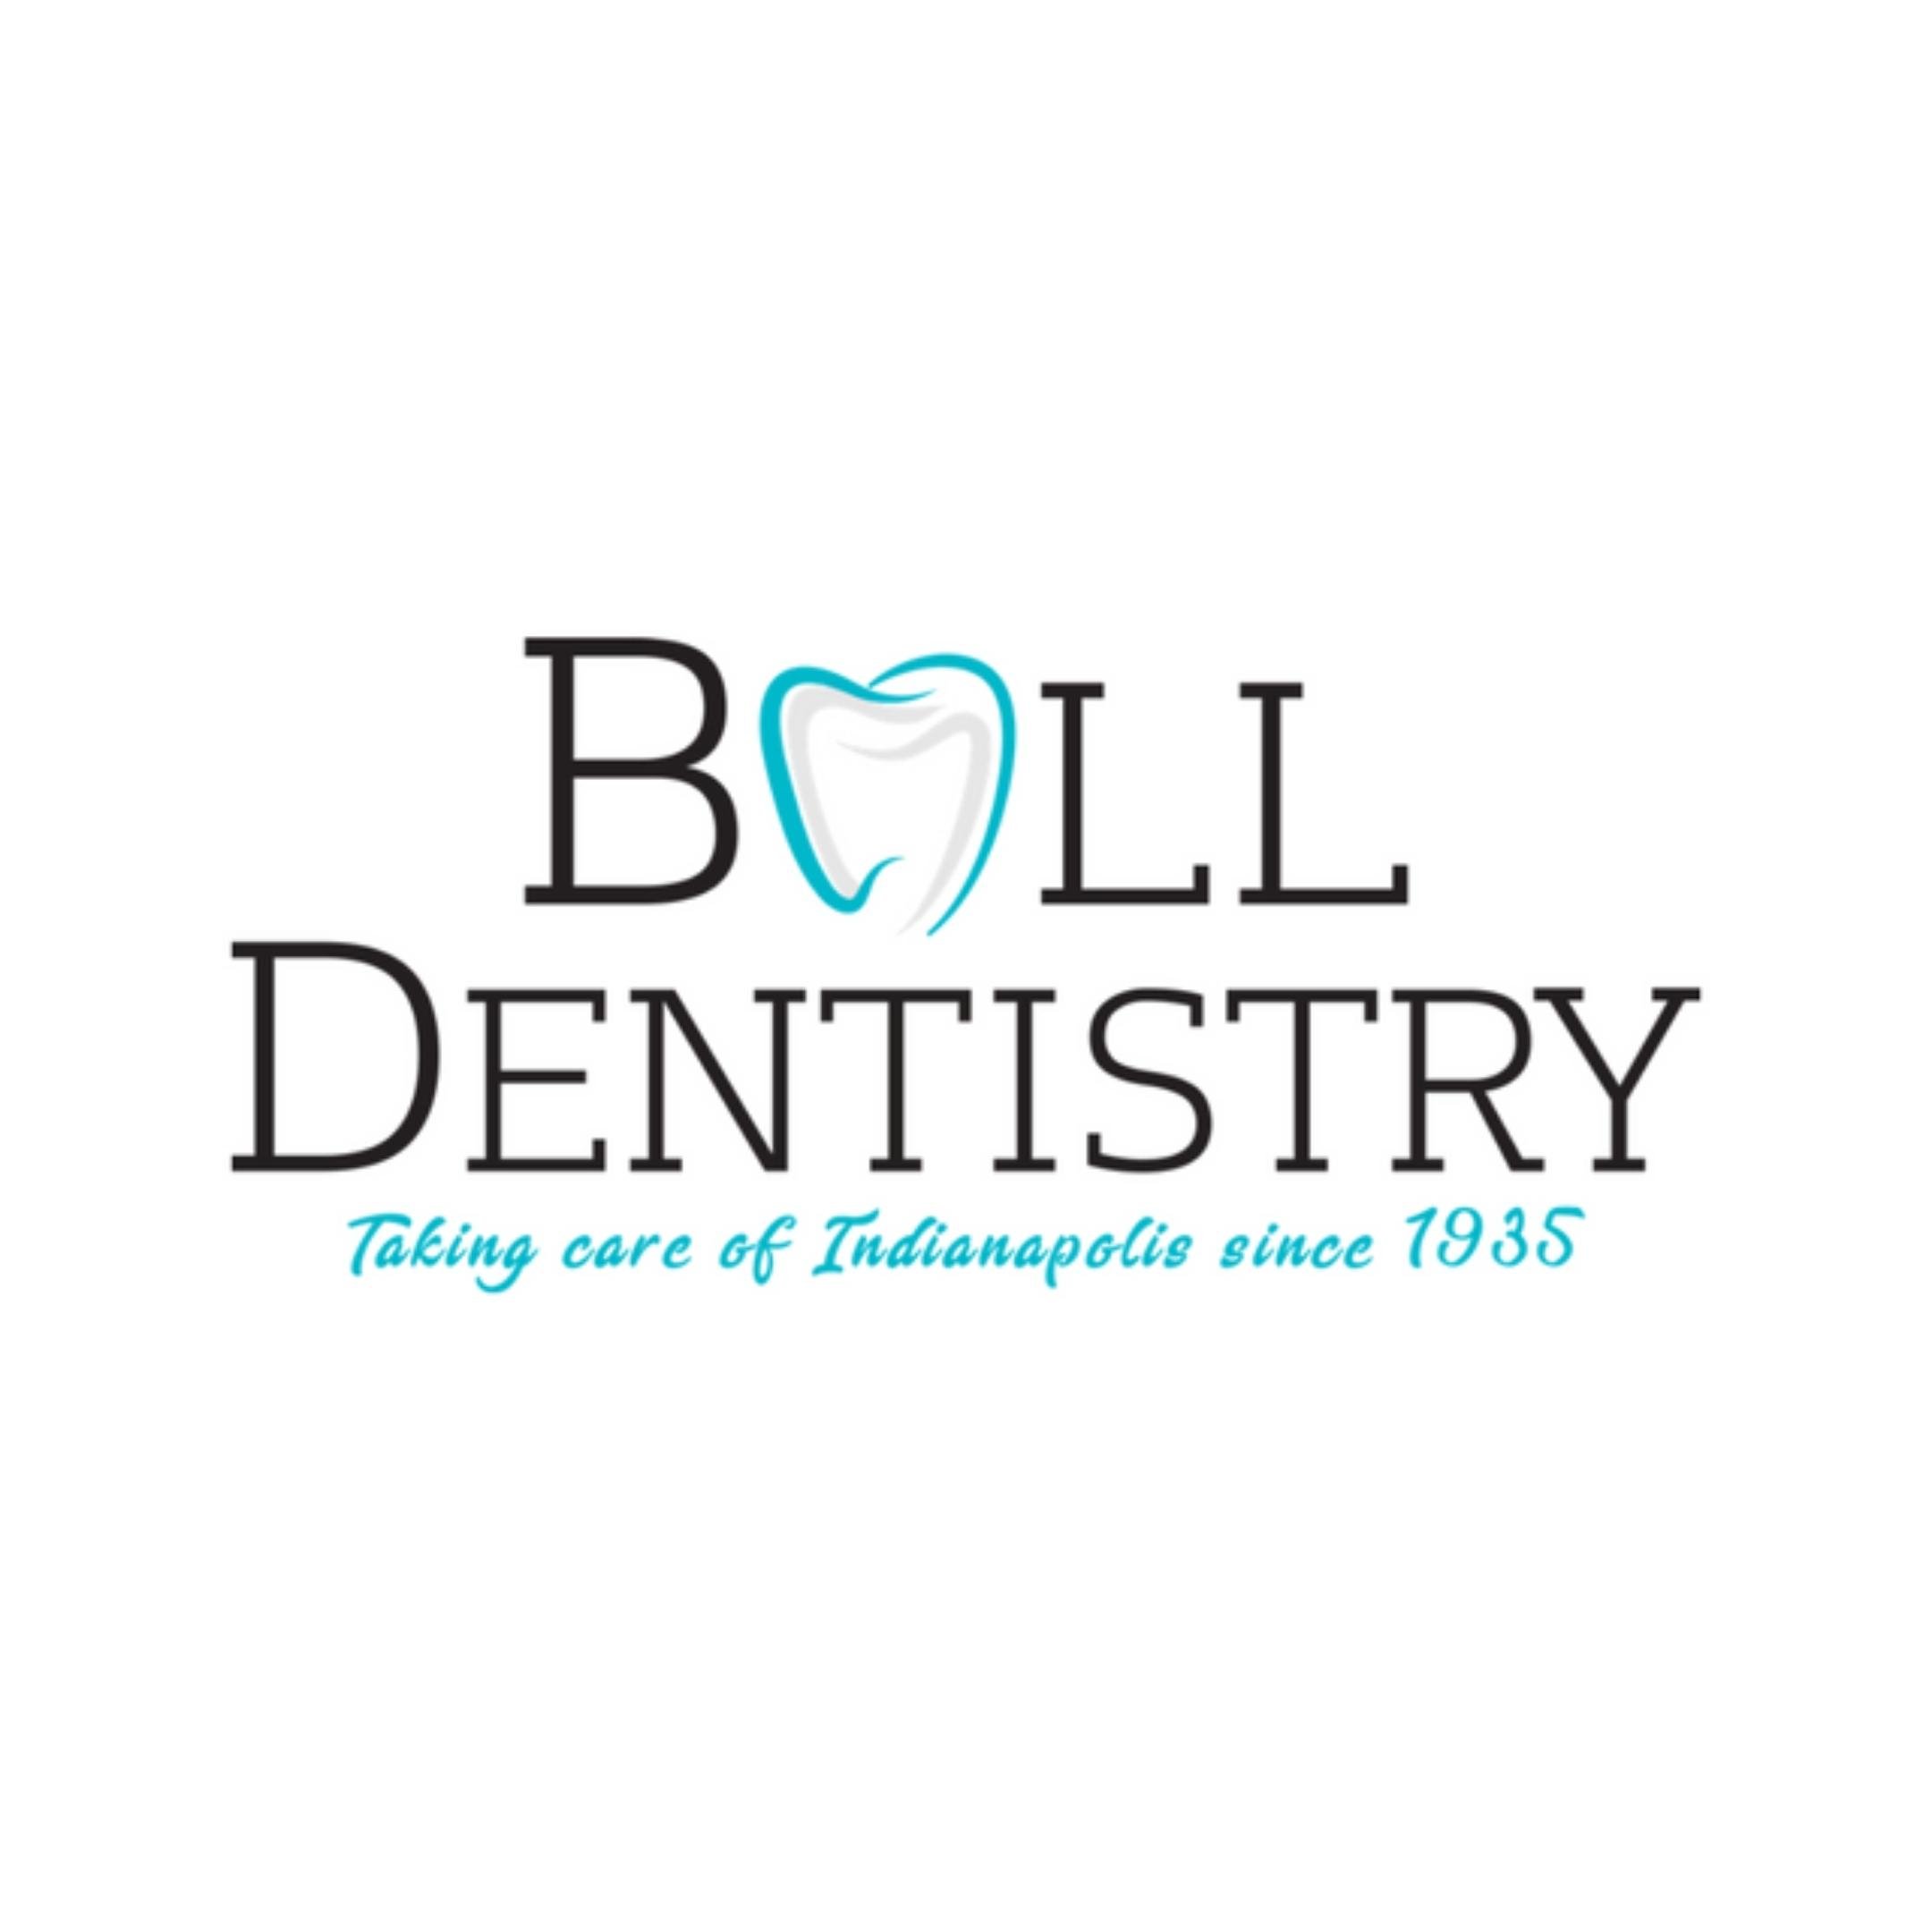 Sponsor Images - Ball Dentistry.jpg